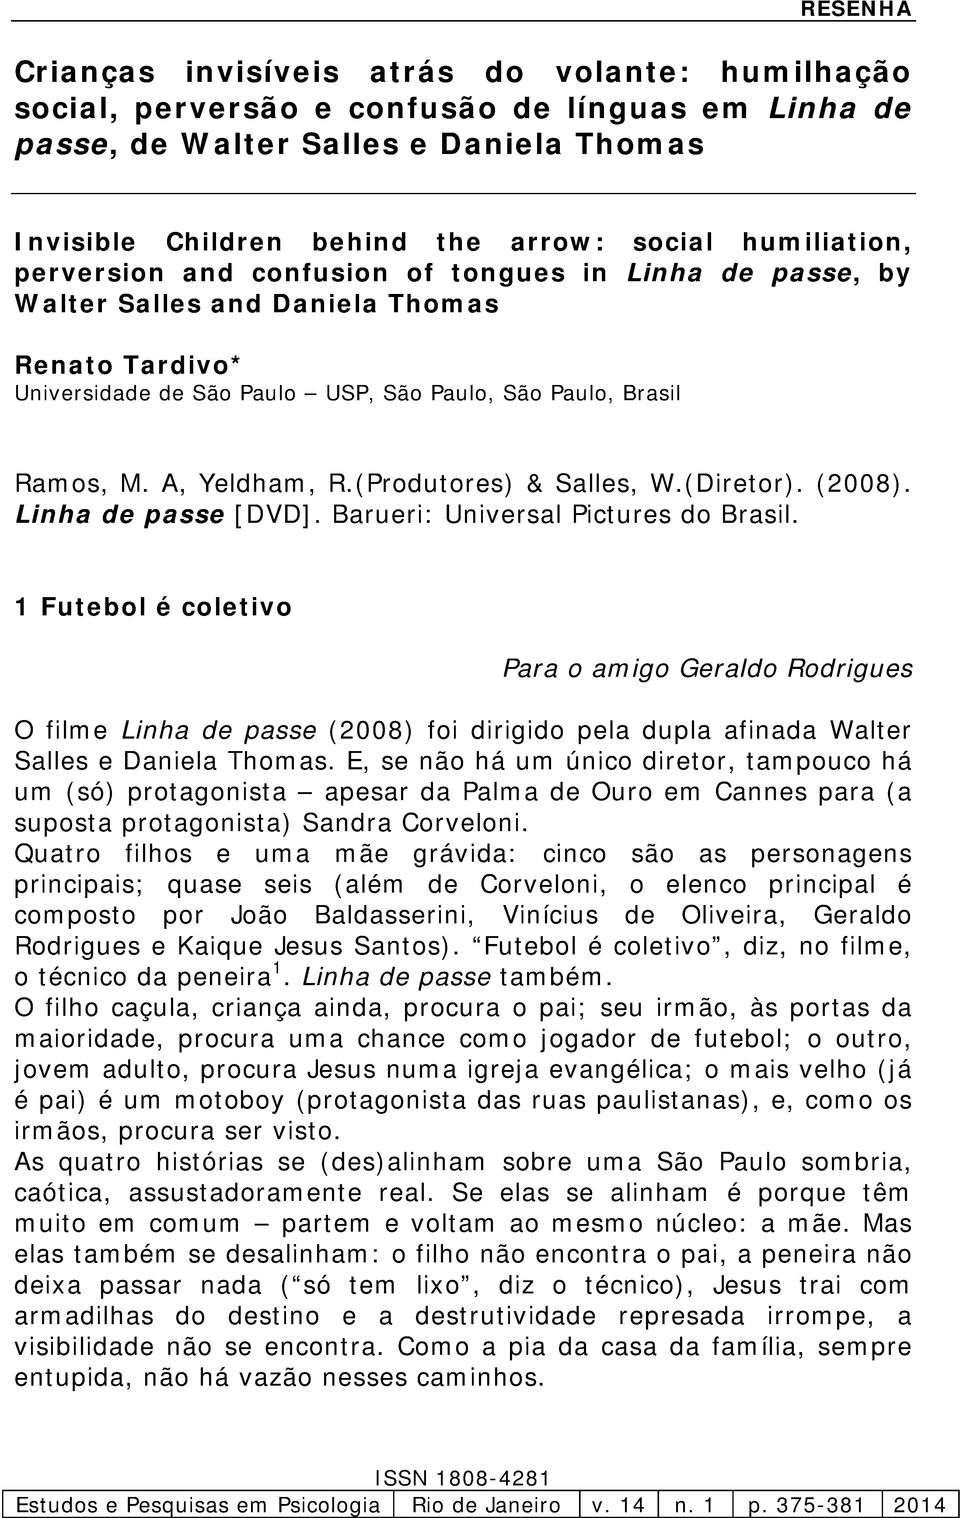 A, Yeldham, R.(Produtores) & Salles, W.(Diretor). (2008). Linha de passe [DVD]. Barueri: Universal Pictures do Brasil.